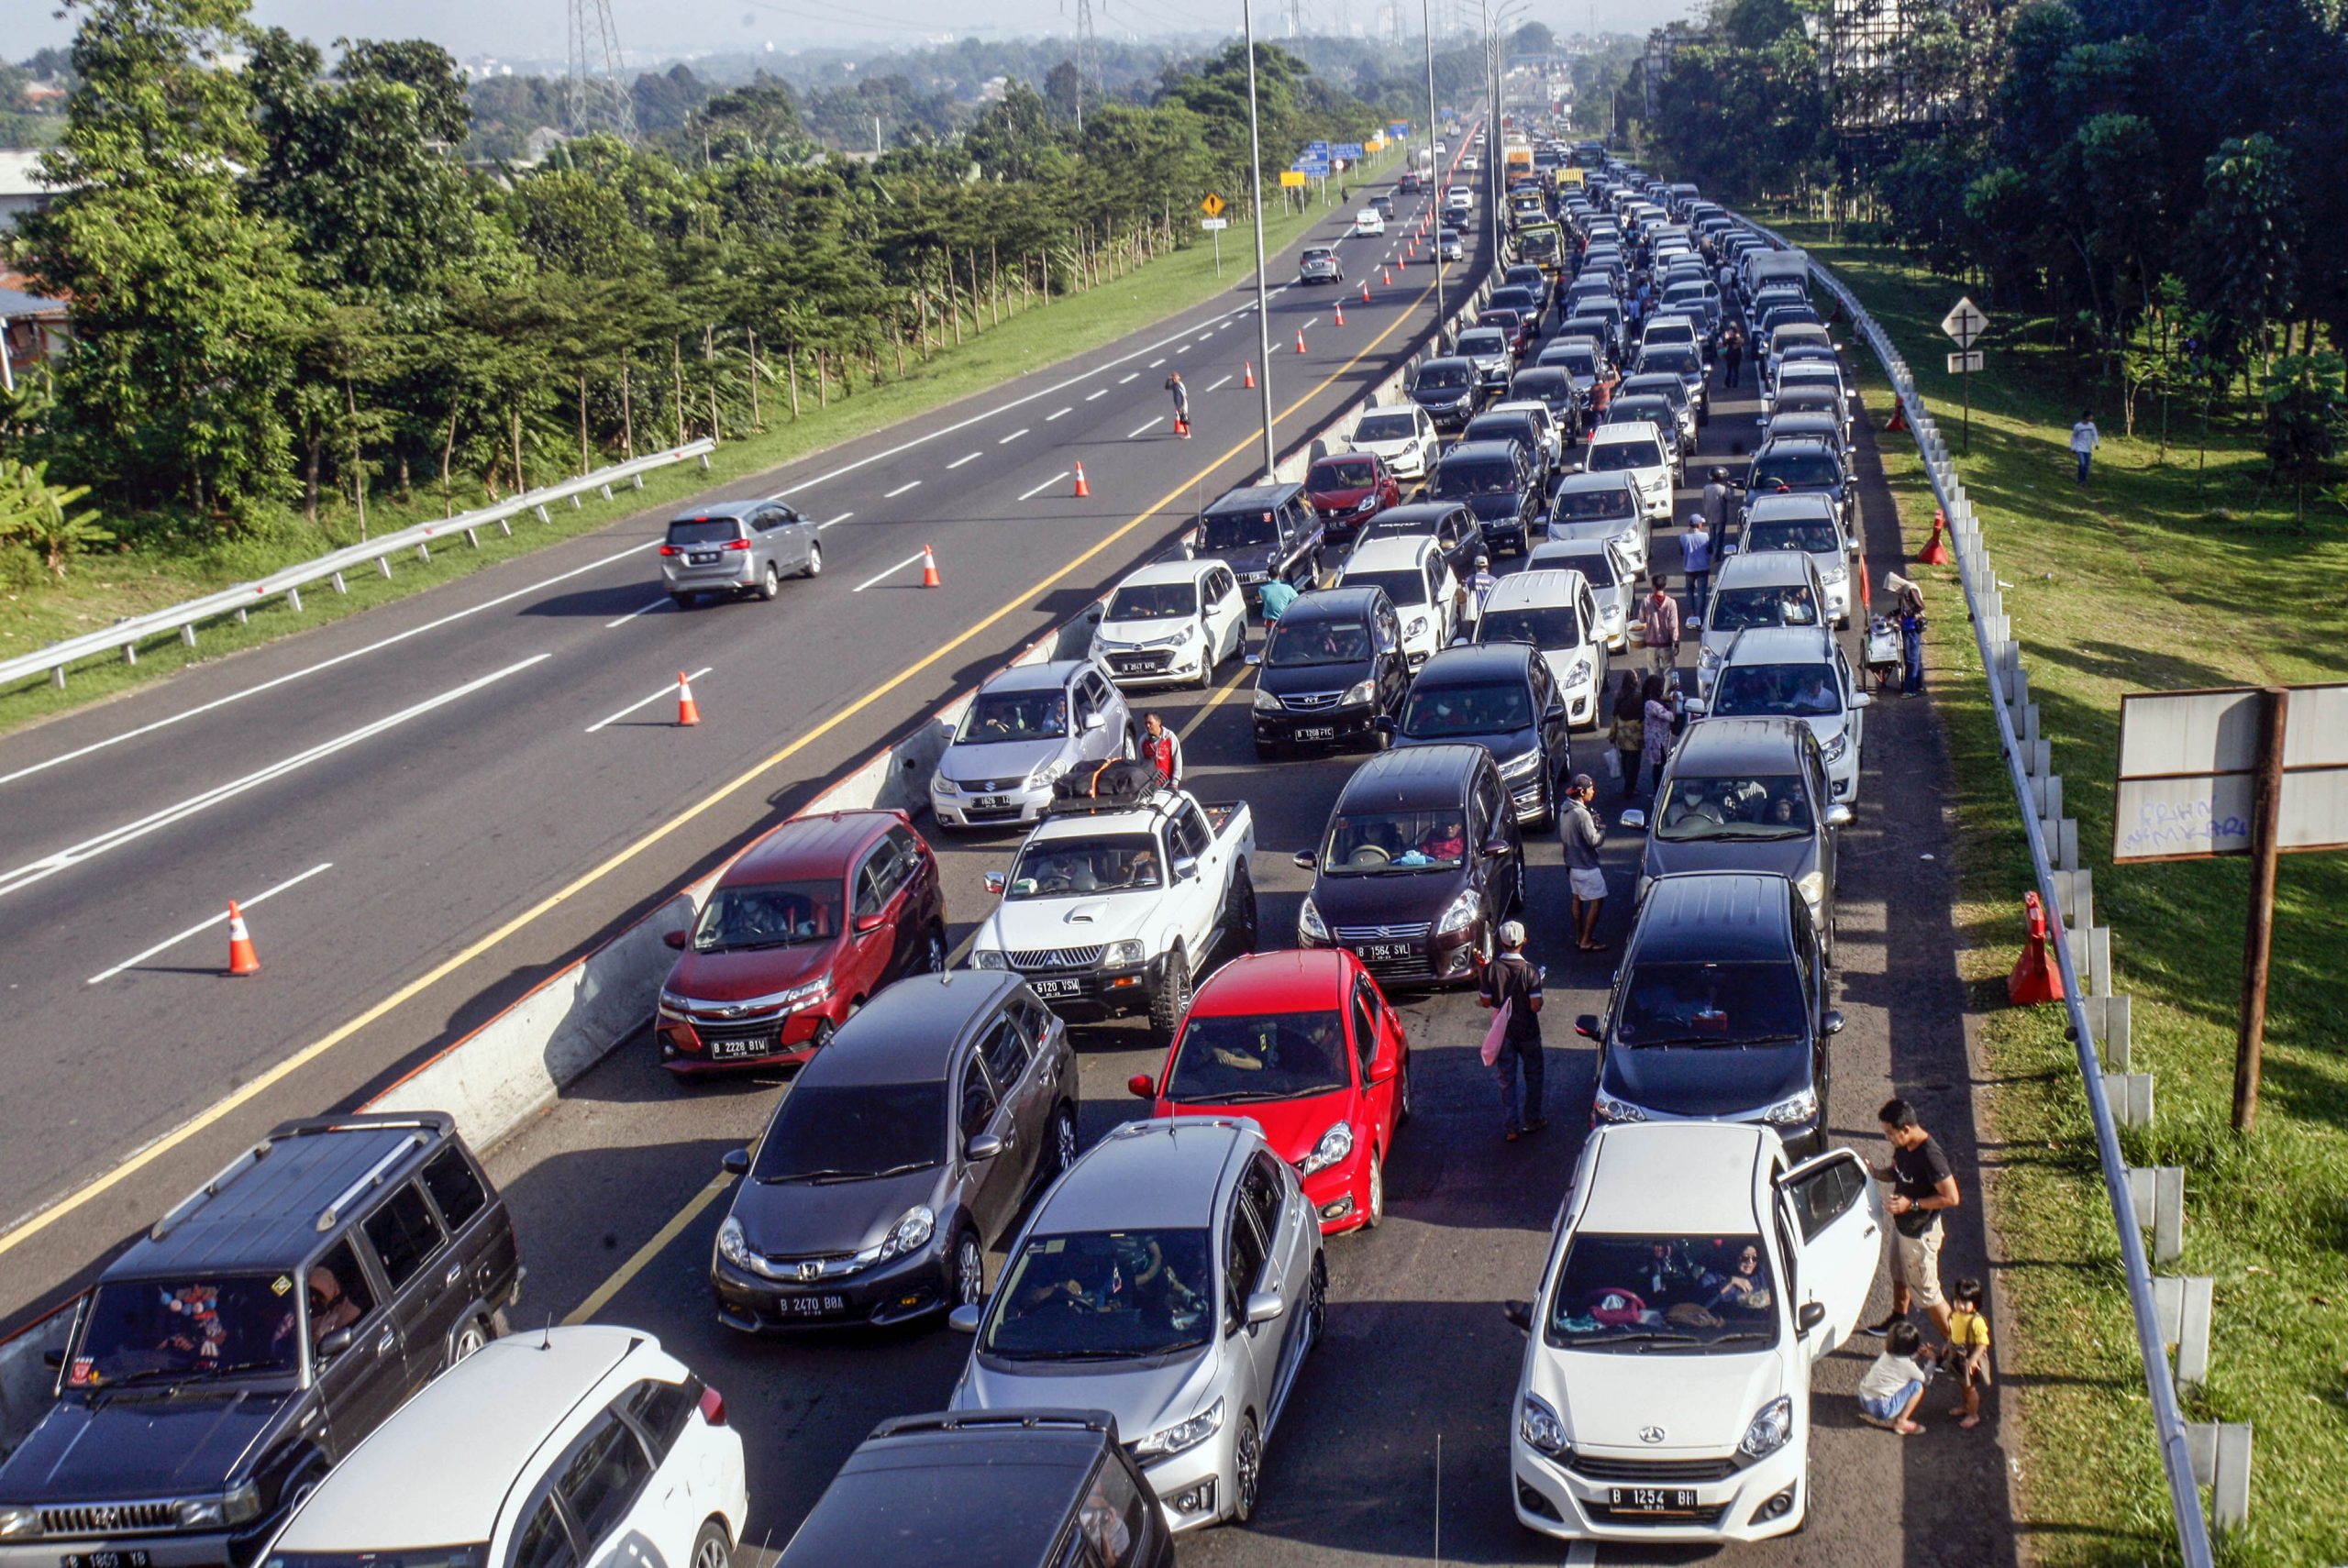 Rekayasa arus lalu lintas satu jalur alias one way karena kepadatan atau penumpukan arus kendaraan yang menuju ke Puncak, Bogor, Jawa Barat.